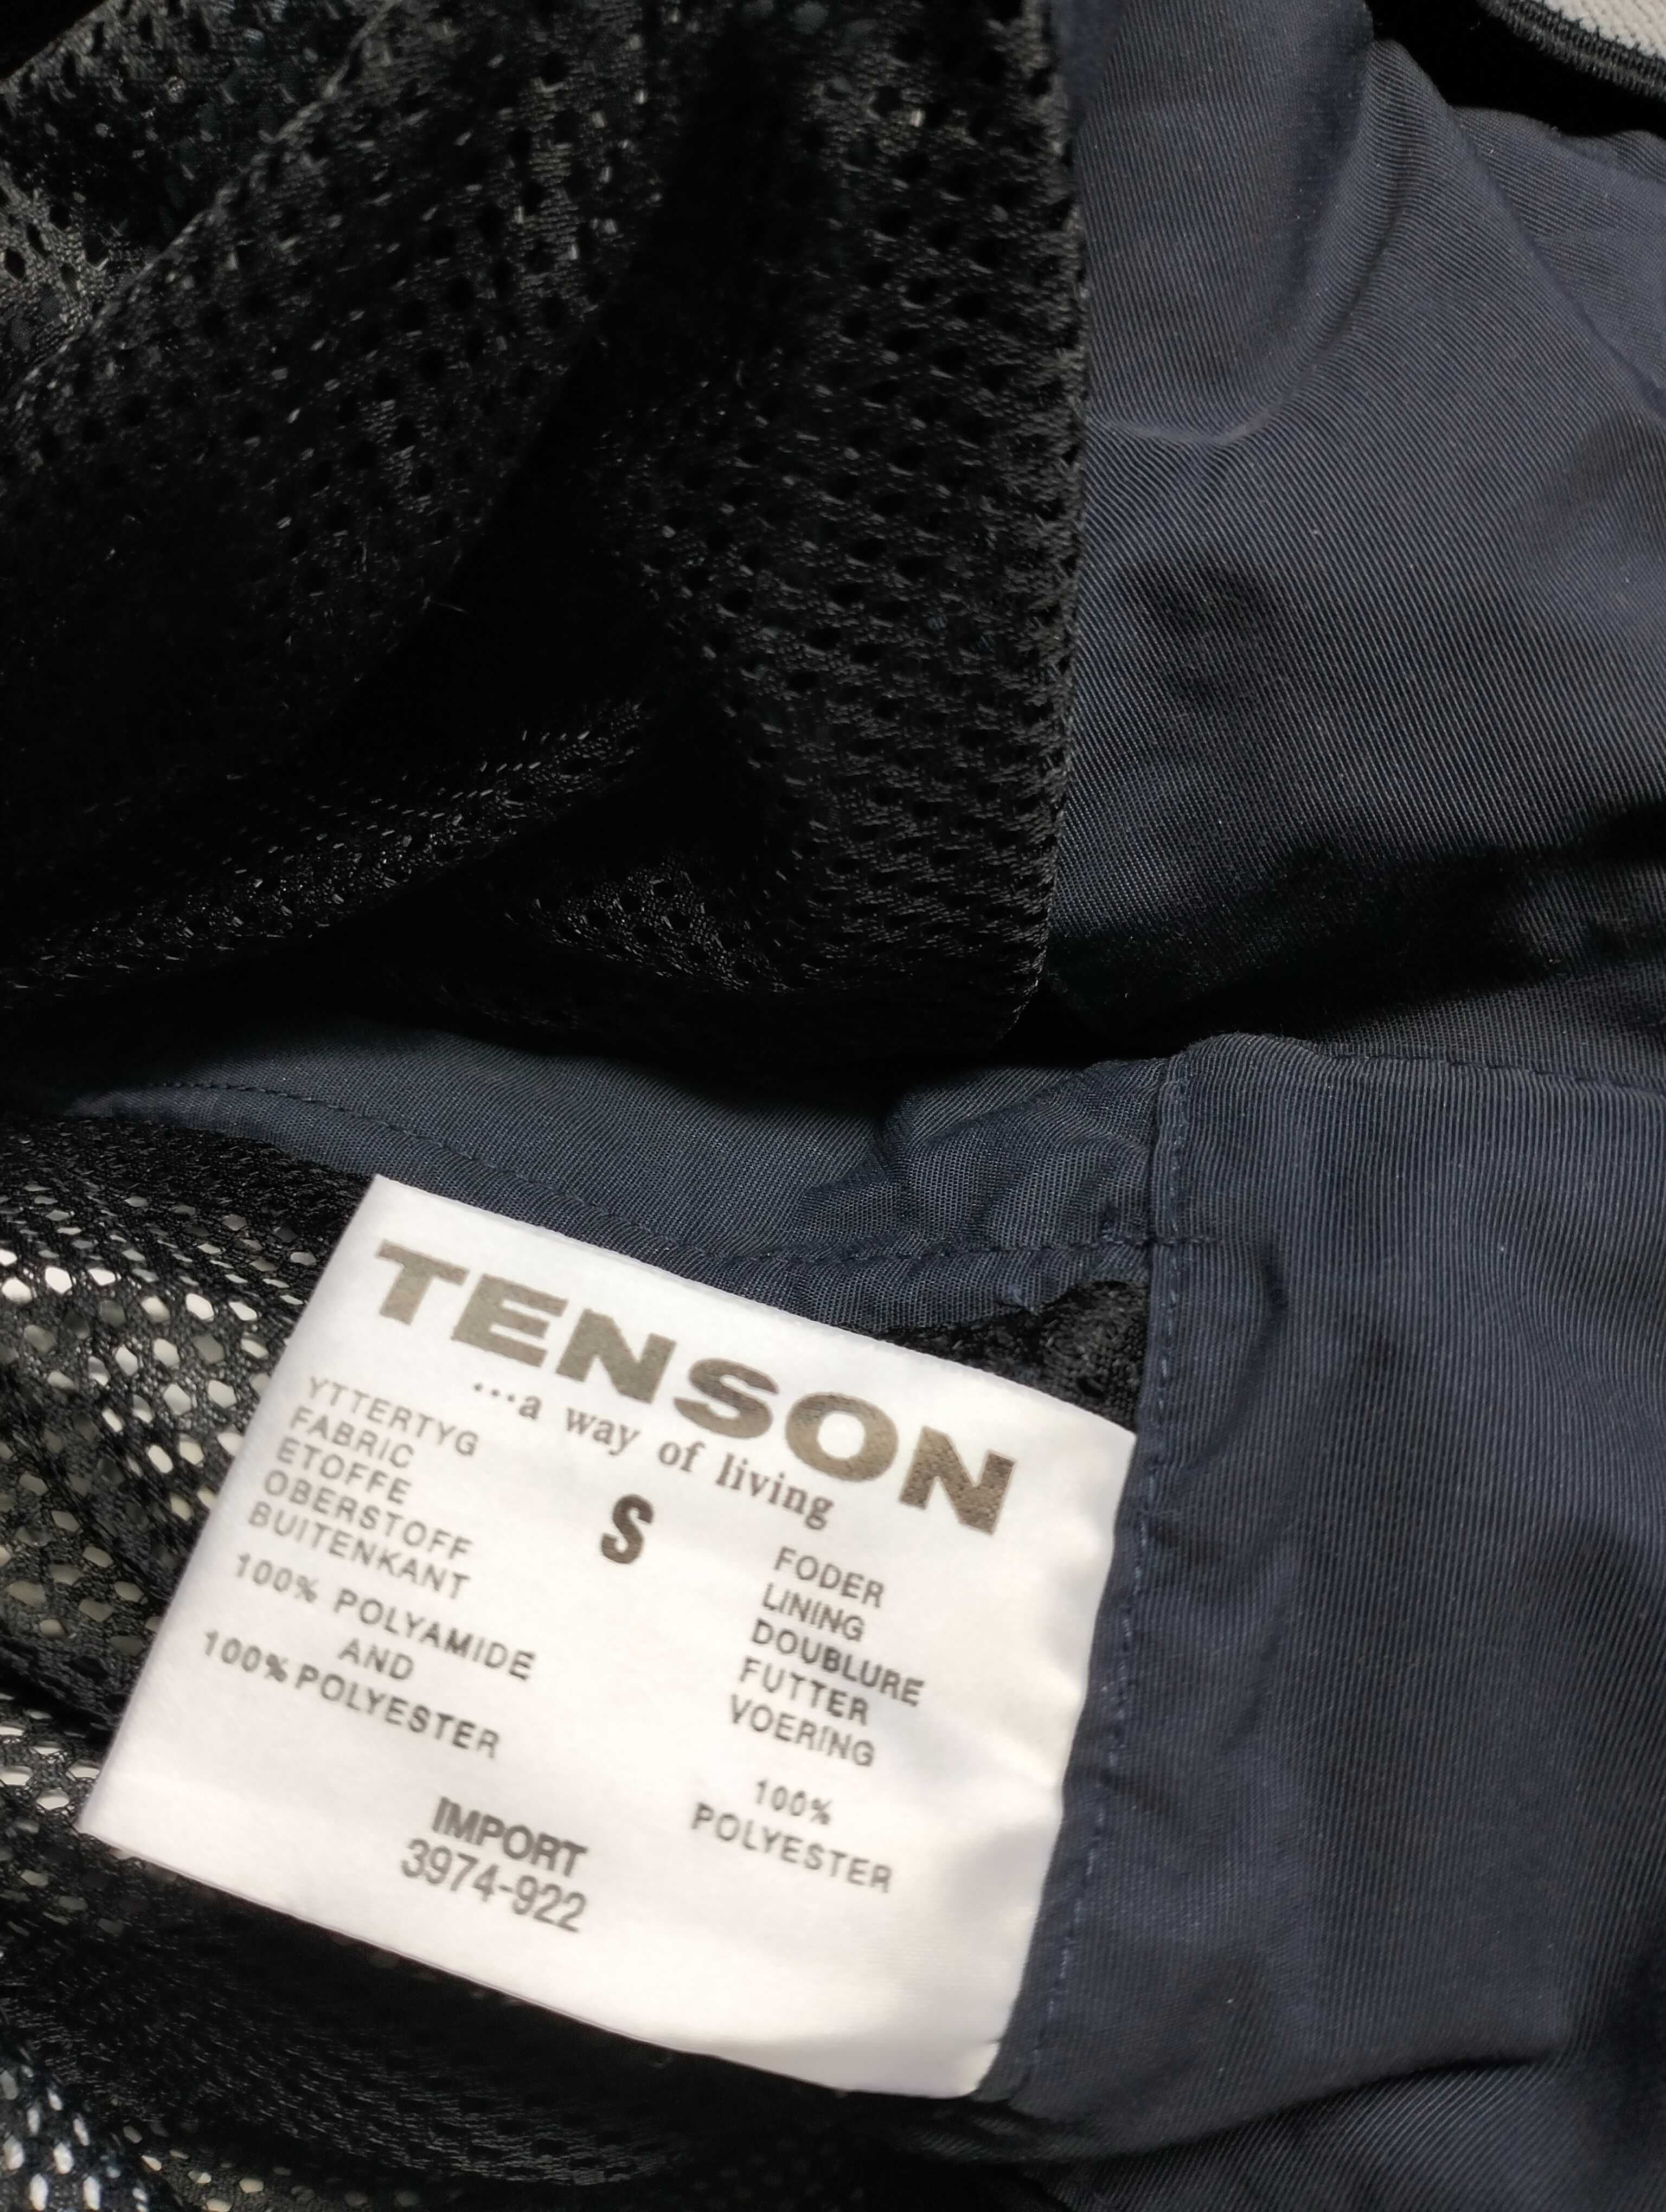 Лыжный комбинезон штаны Tenson Recco Norge.